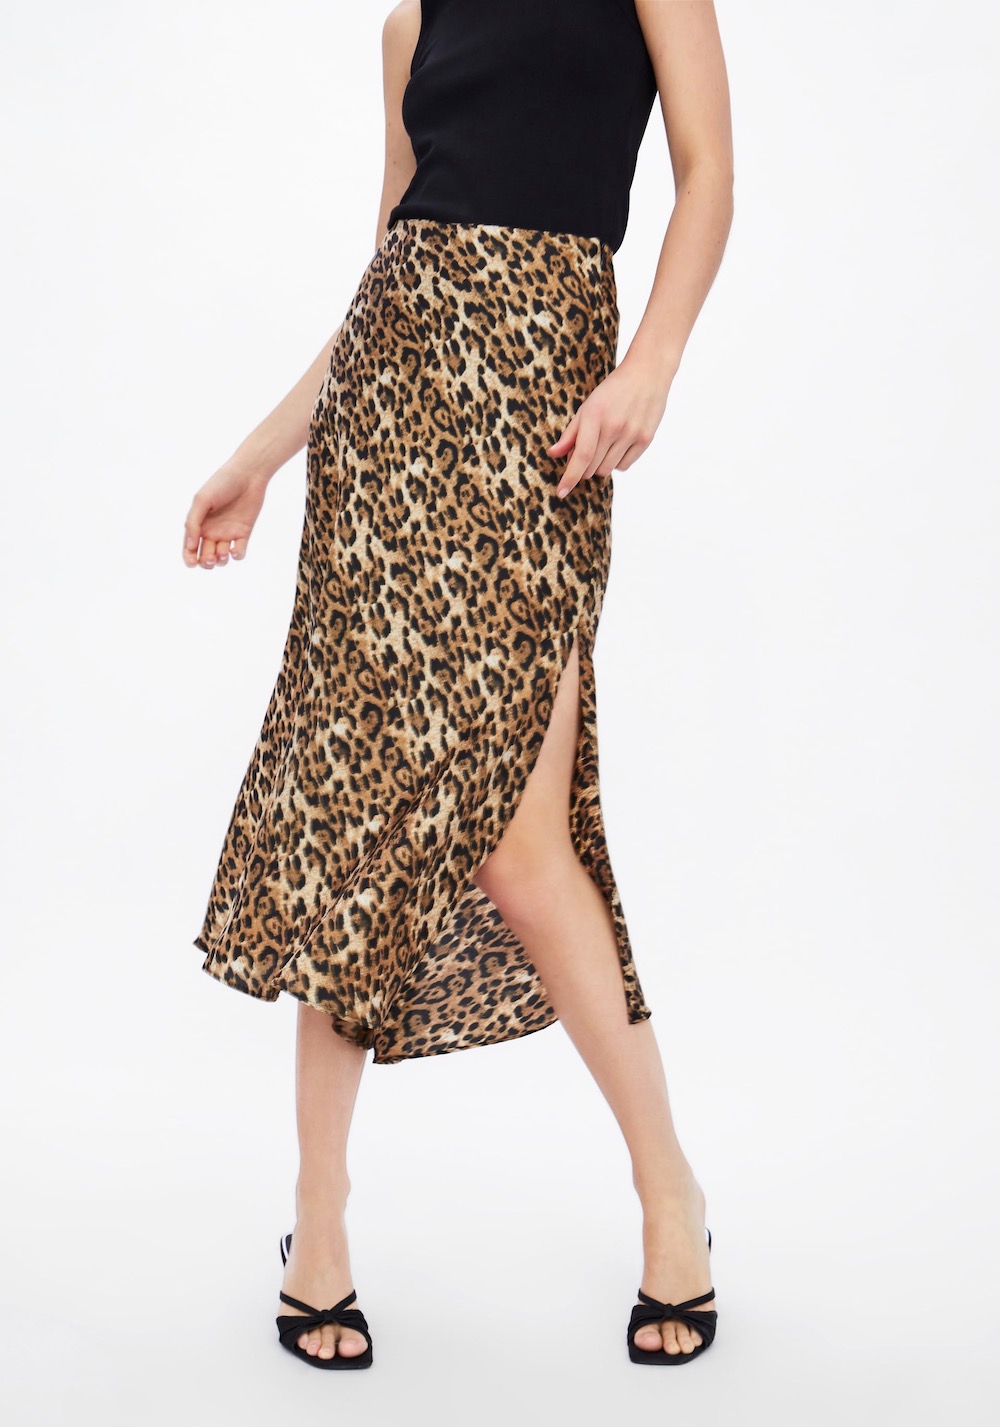 A Leopard Print Midi Skirt